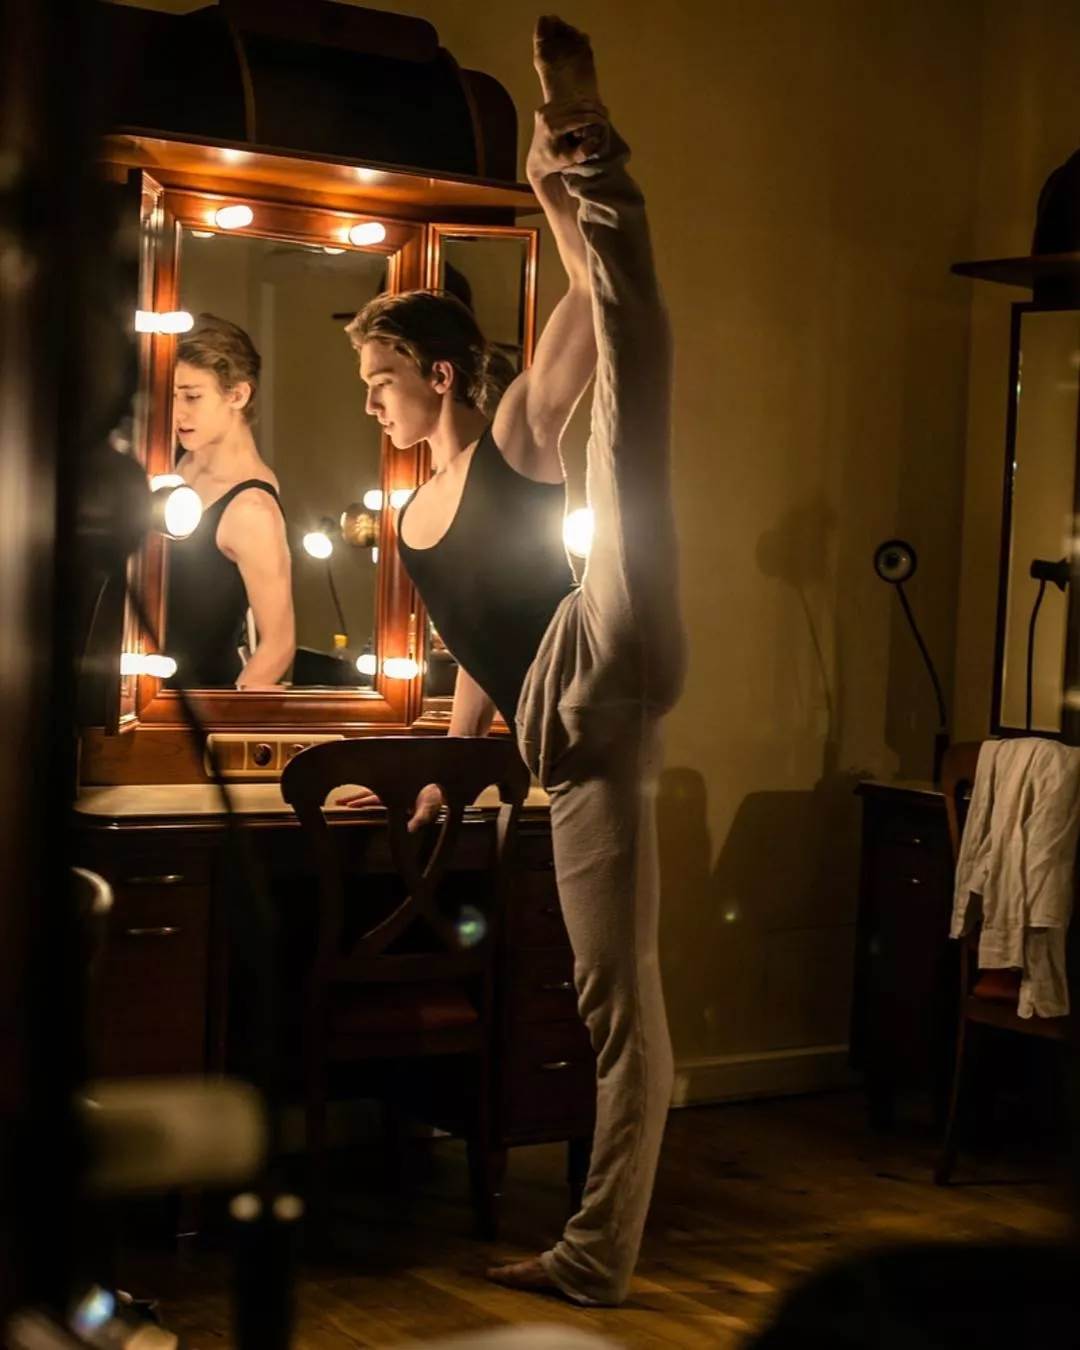 像天使墜落凡間！俄羅斯19歲「芭蕾少年」結合力與美　拍時裝廣告「帥到更逼人」♡